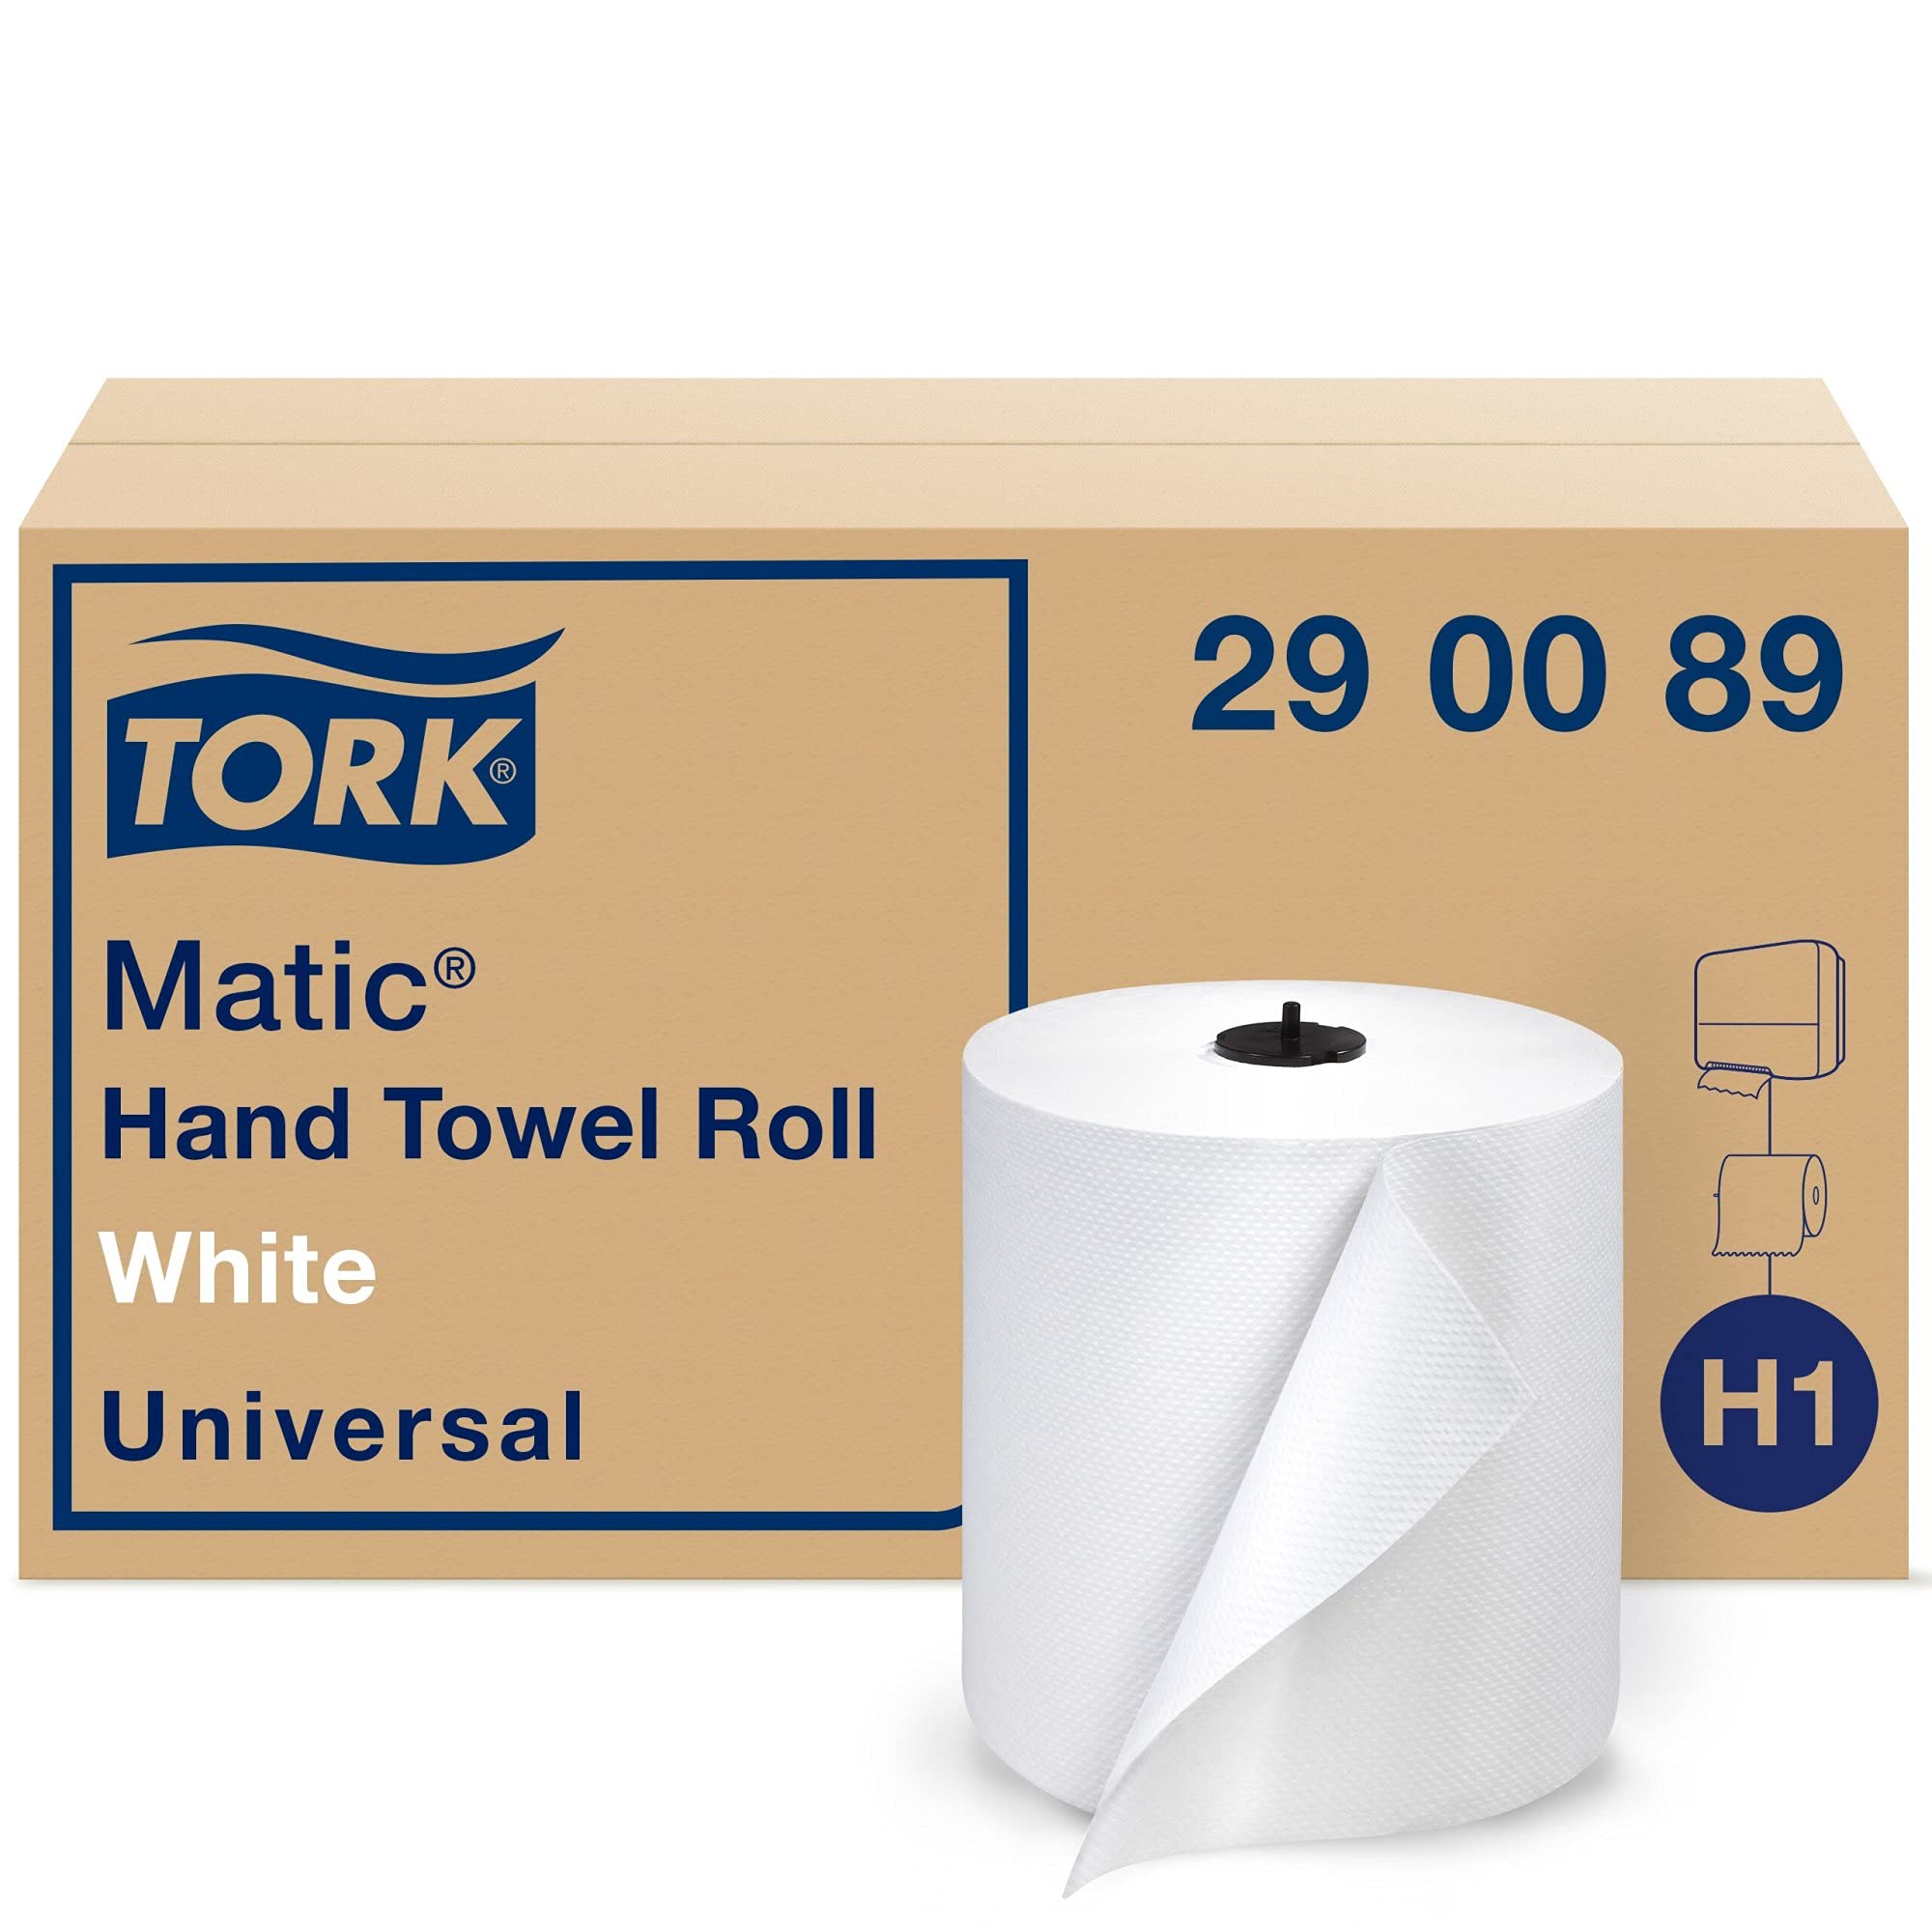 Tork Matic 纸巾卷白色 H1，通用，100% 再生纤维，6 卷 x 700 英尺，290089